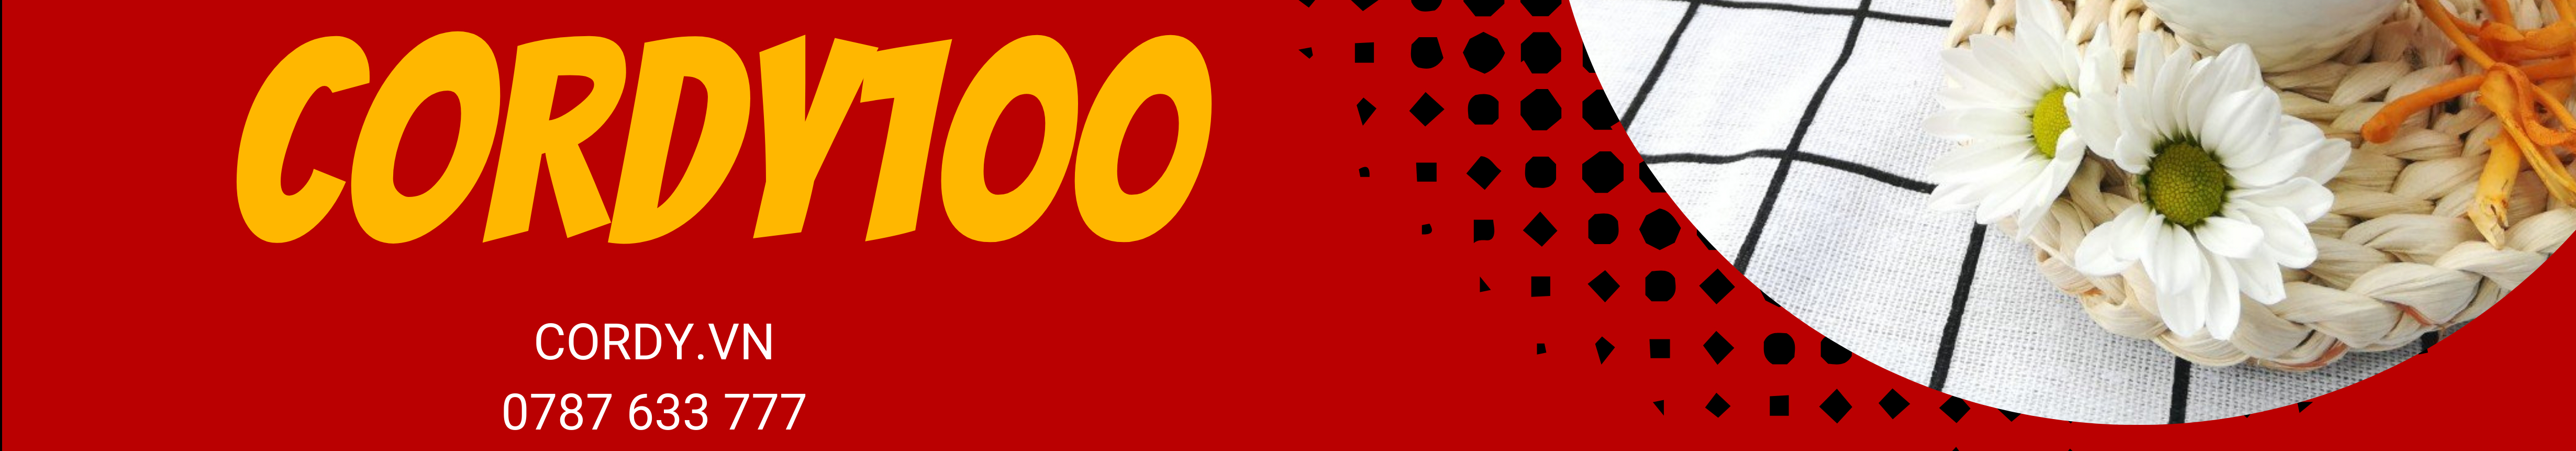 CORDY100 Đông Trùng Hạ Thảo's profile banner